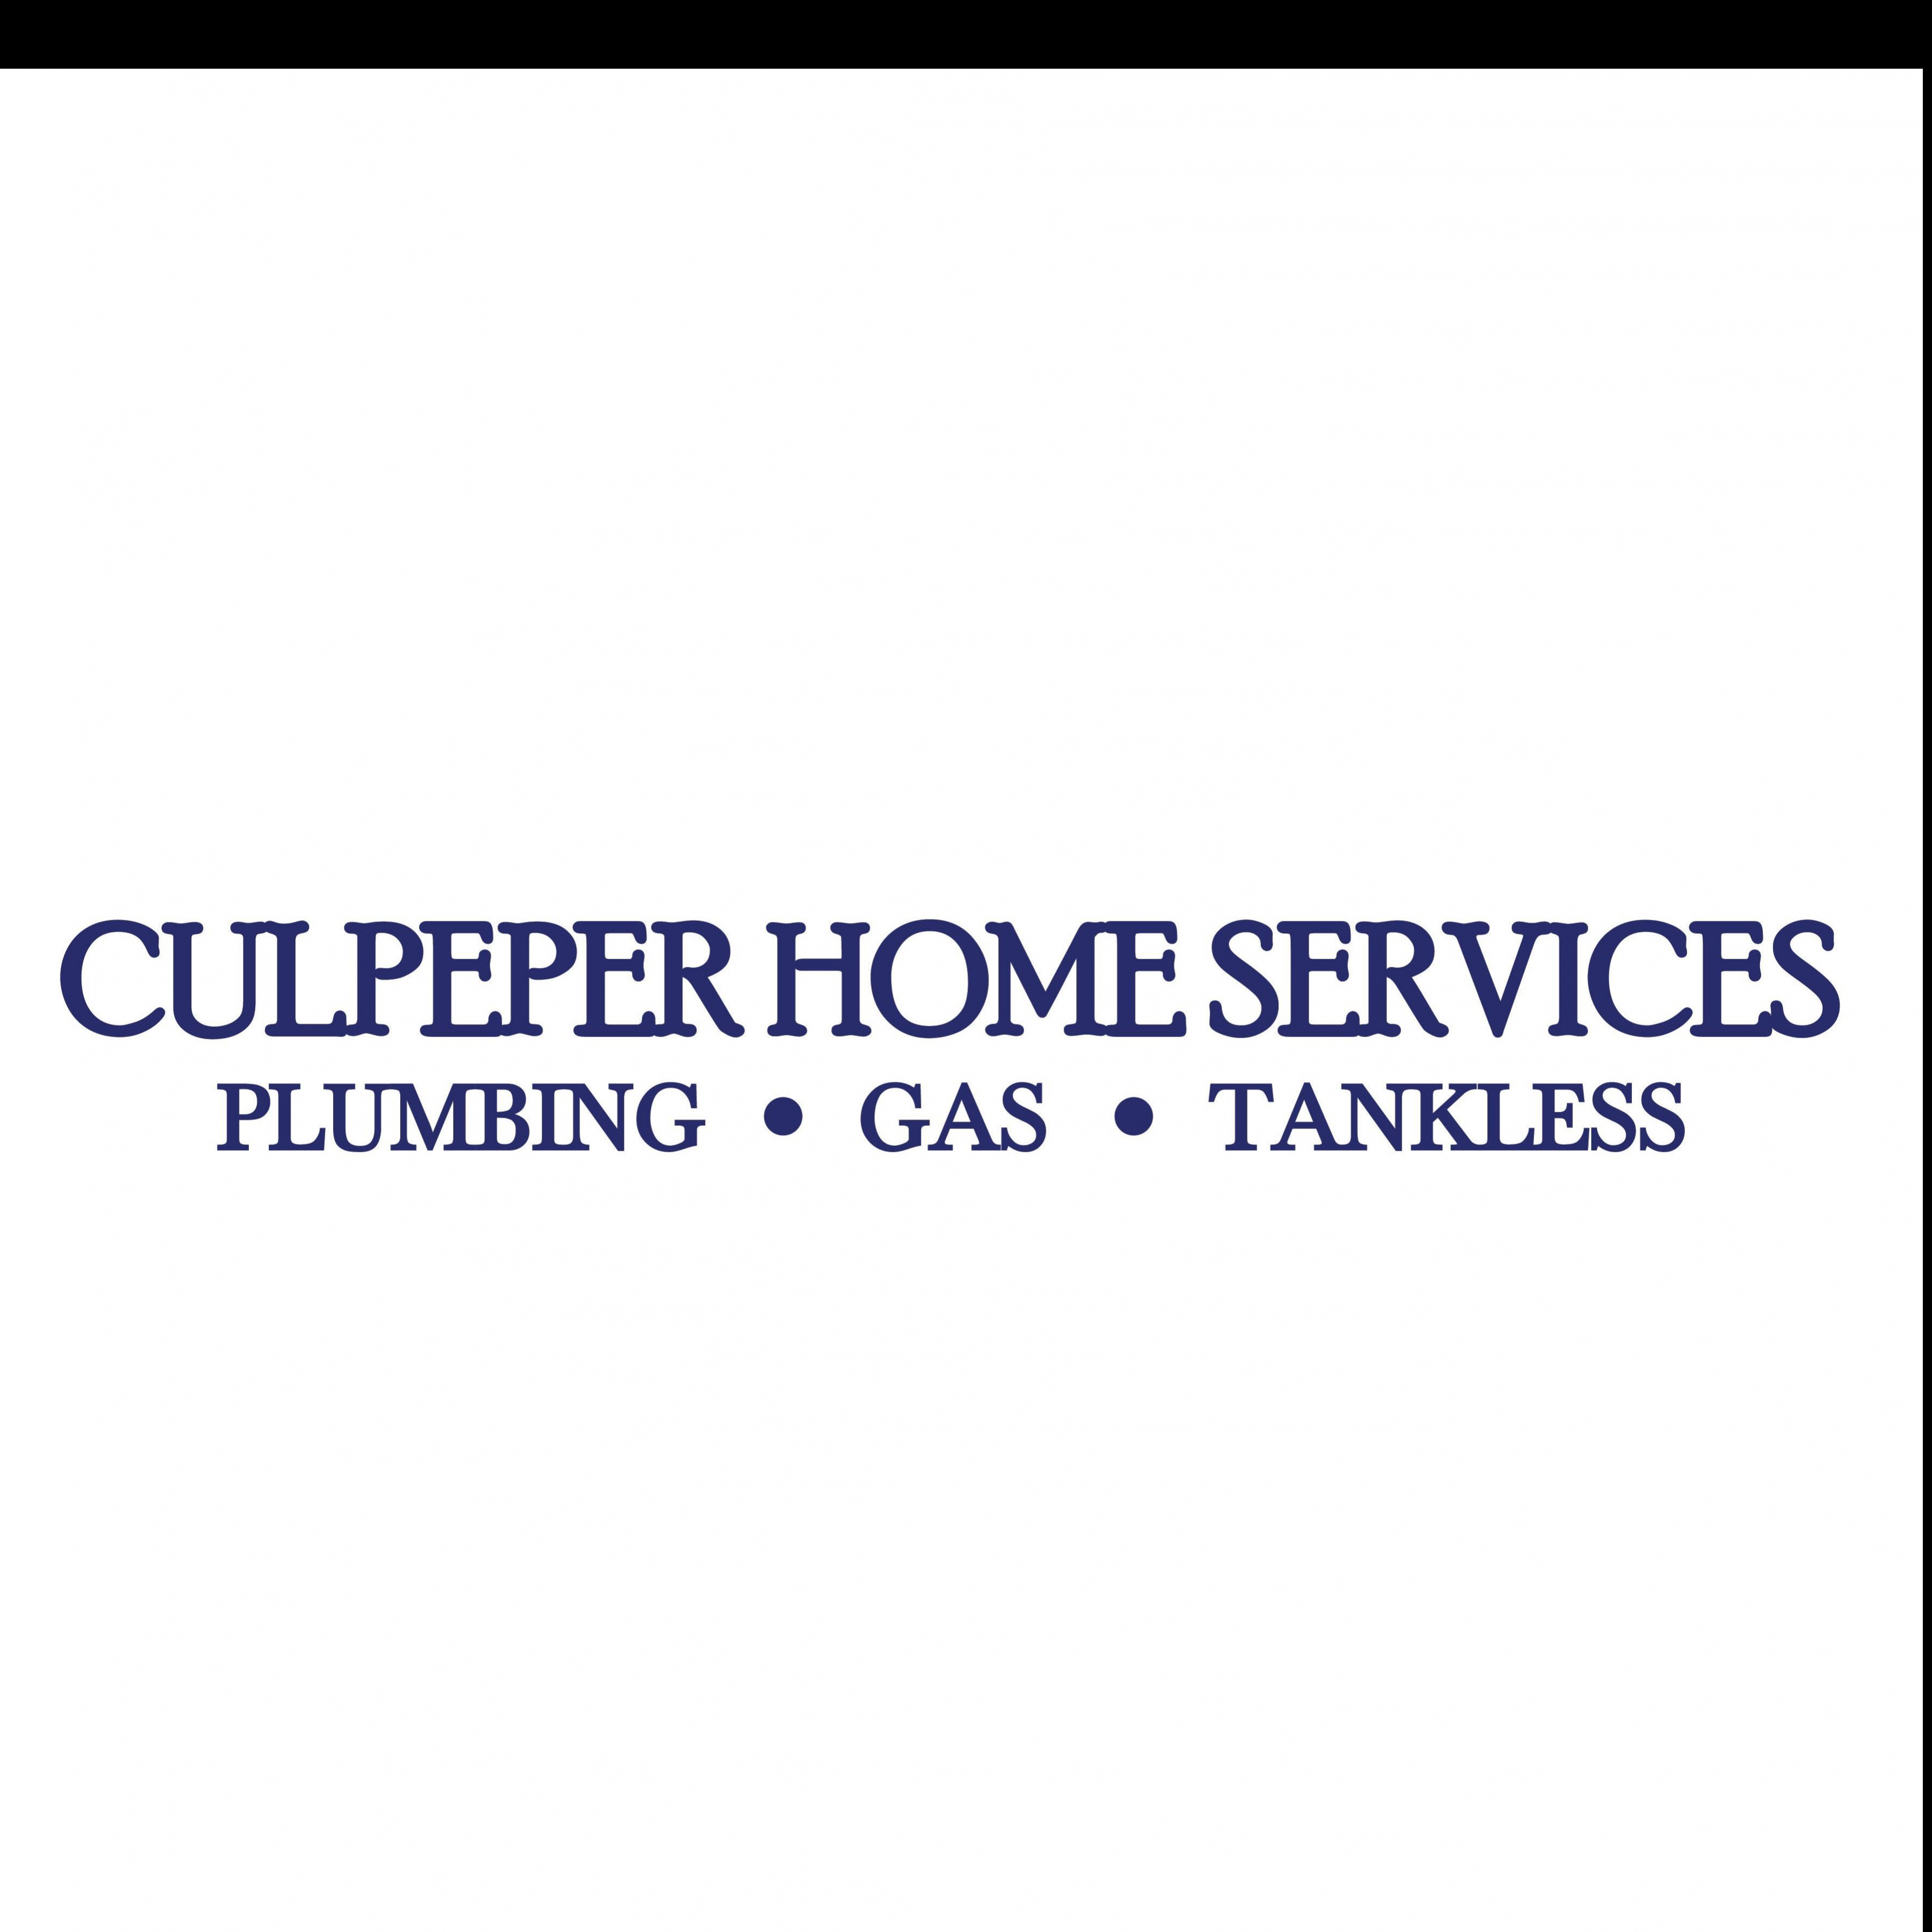 CulpeperHome